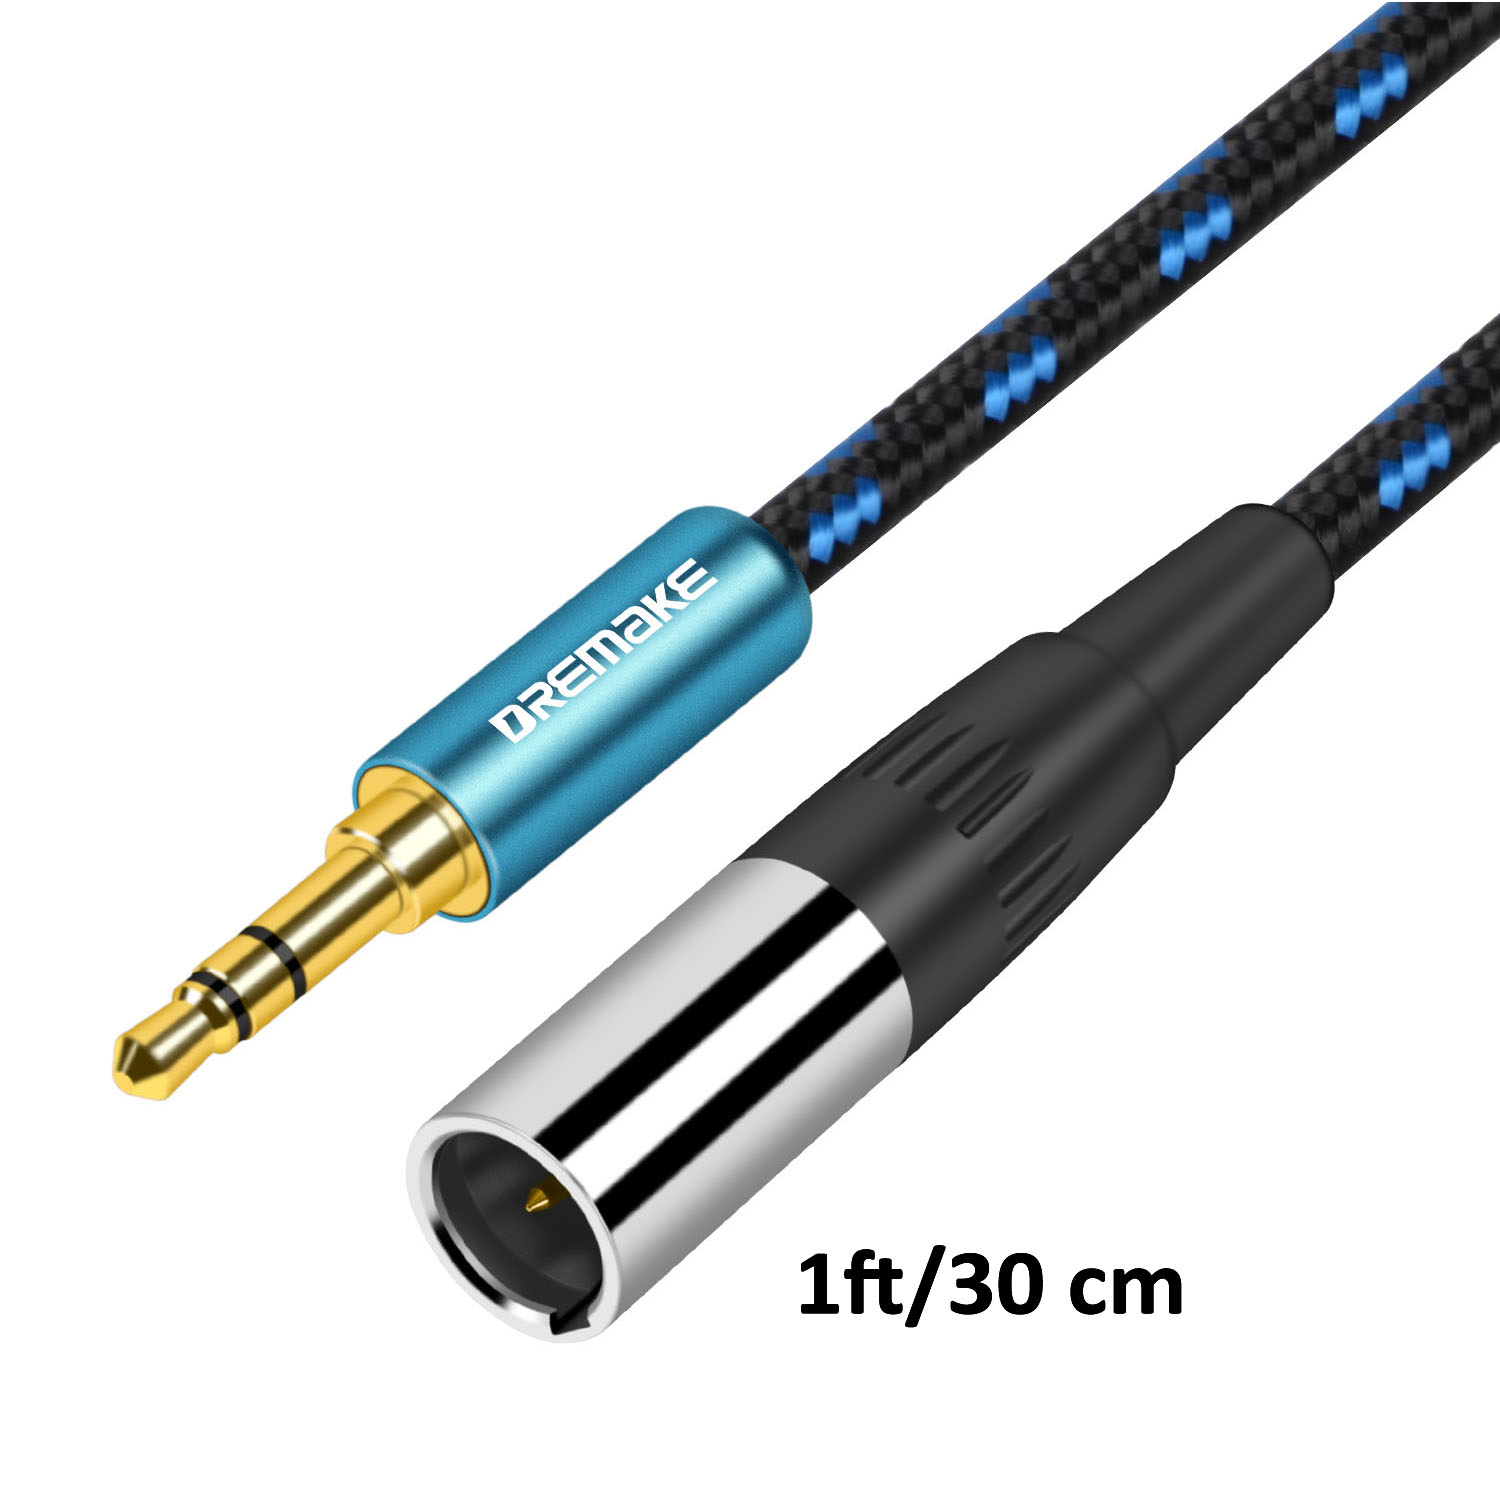 Vention 2.5mm à 3.5mm câble Audio adaptateur Aux Jack 3.5 à 2.5